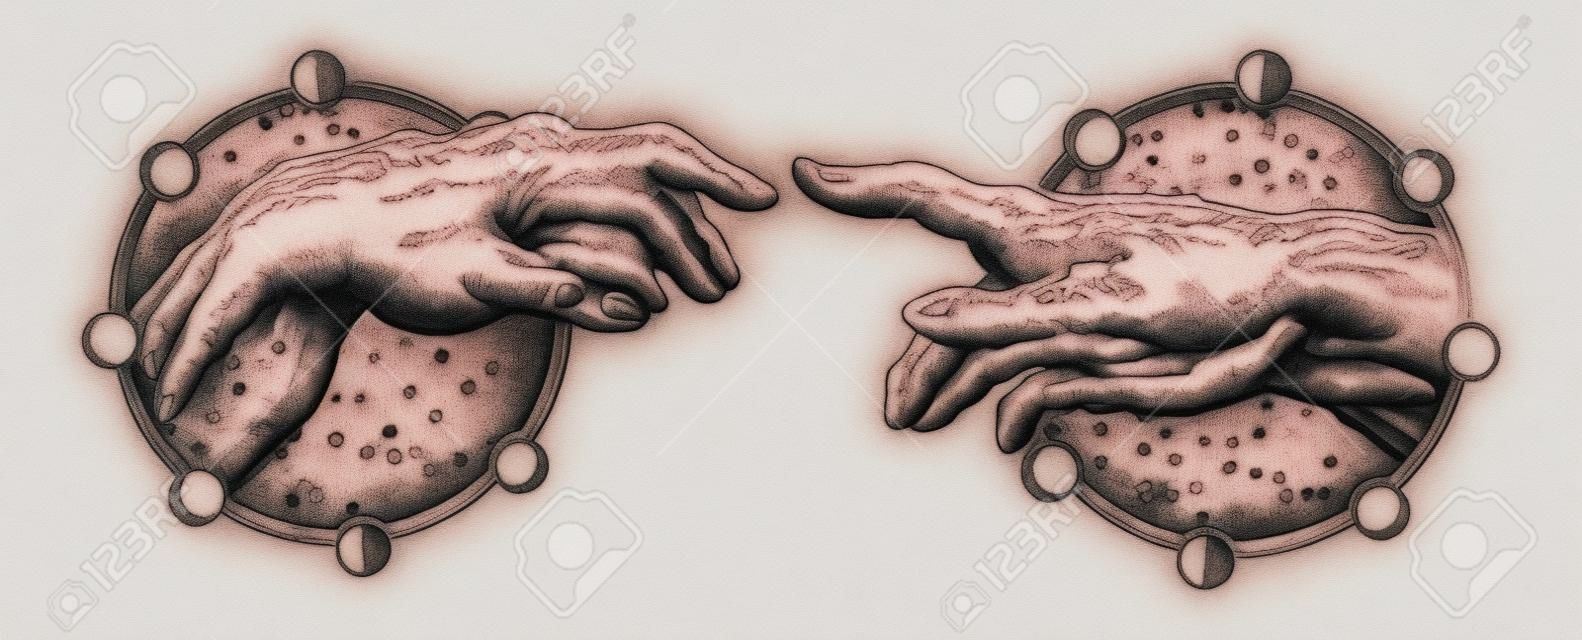 Michelangelo Tanrının dokunuşu. İnsan elleri parmak dövmesi ve t-shirt tasarımı ile dokunuyor. Eller dövme Rönesansı. Tanrı ve Adam, maneviyat, din, bağlantı ve etkileşimin sembolü